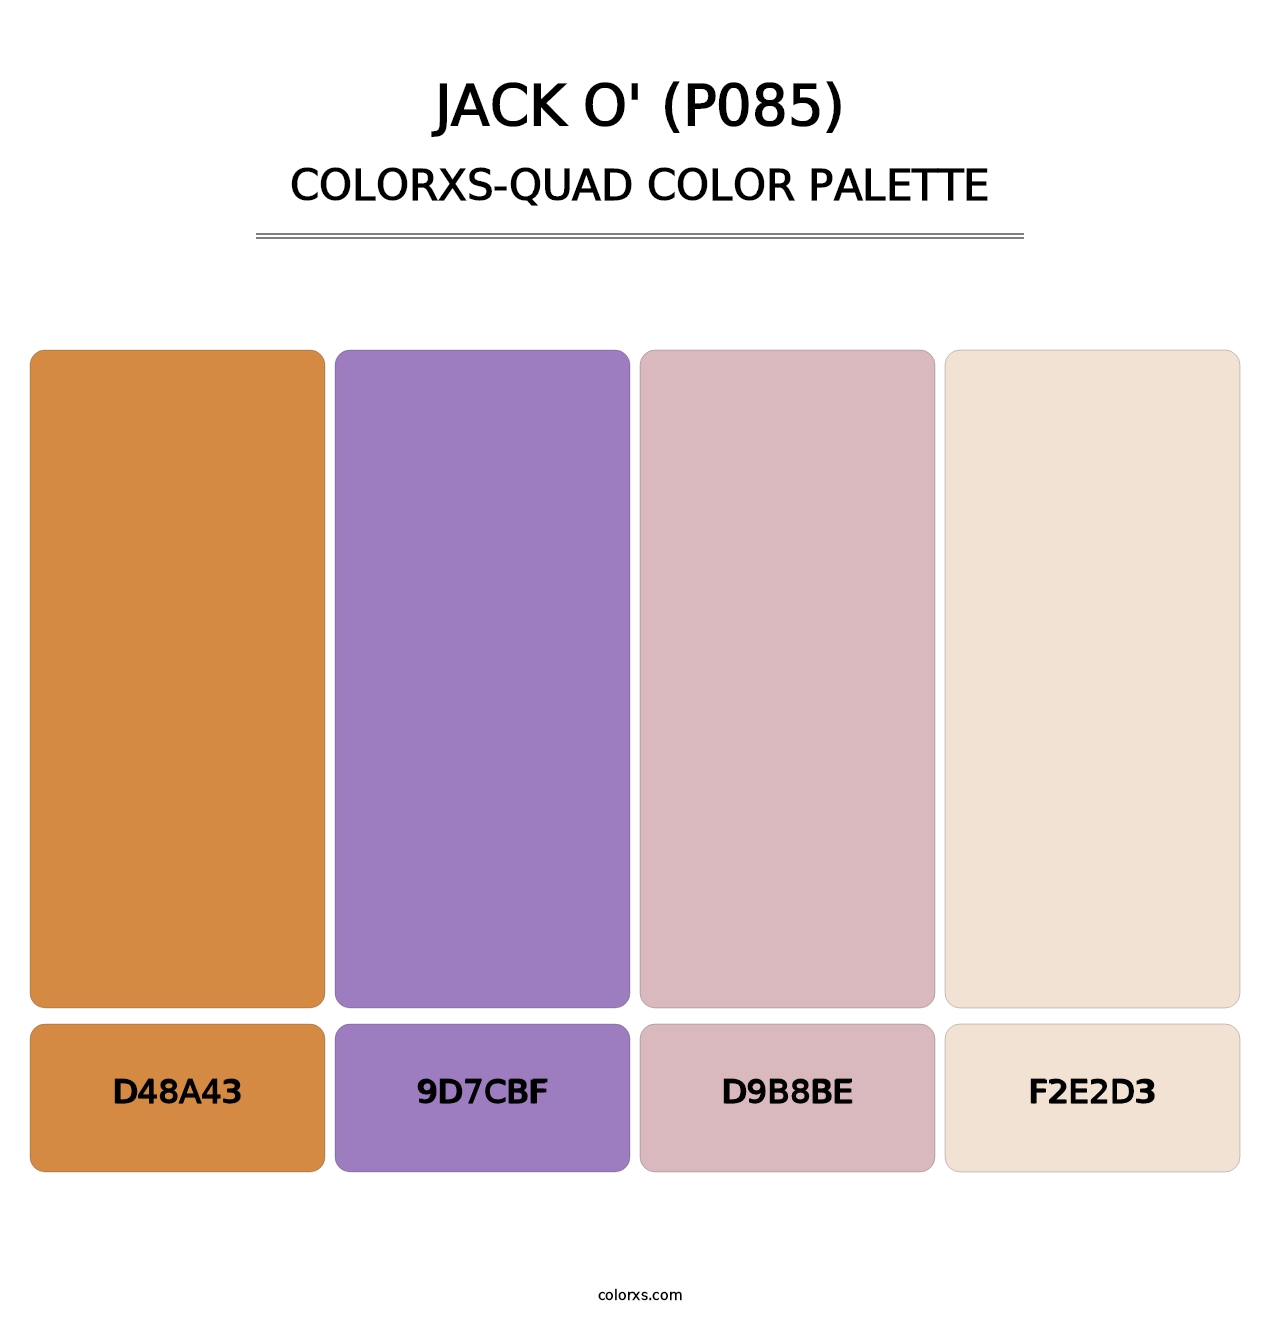 Jack O' (P085) - Colorxs Quad Palette